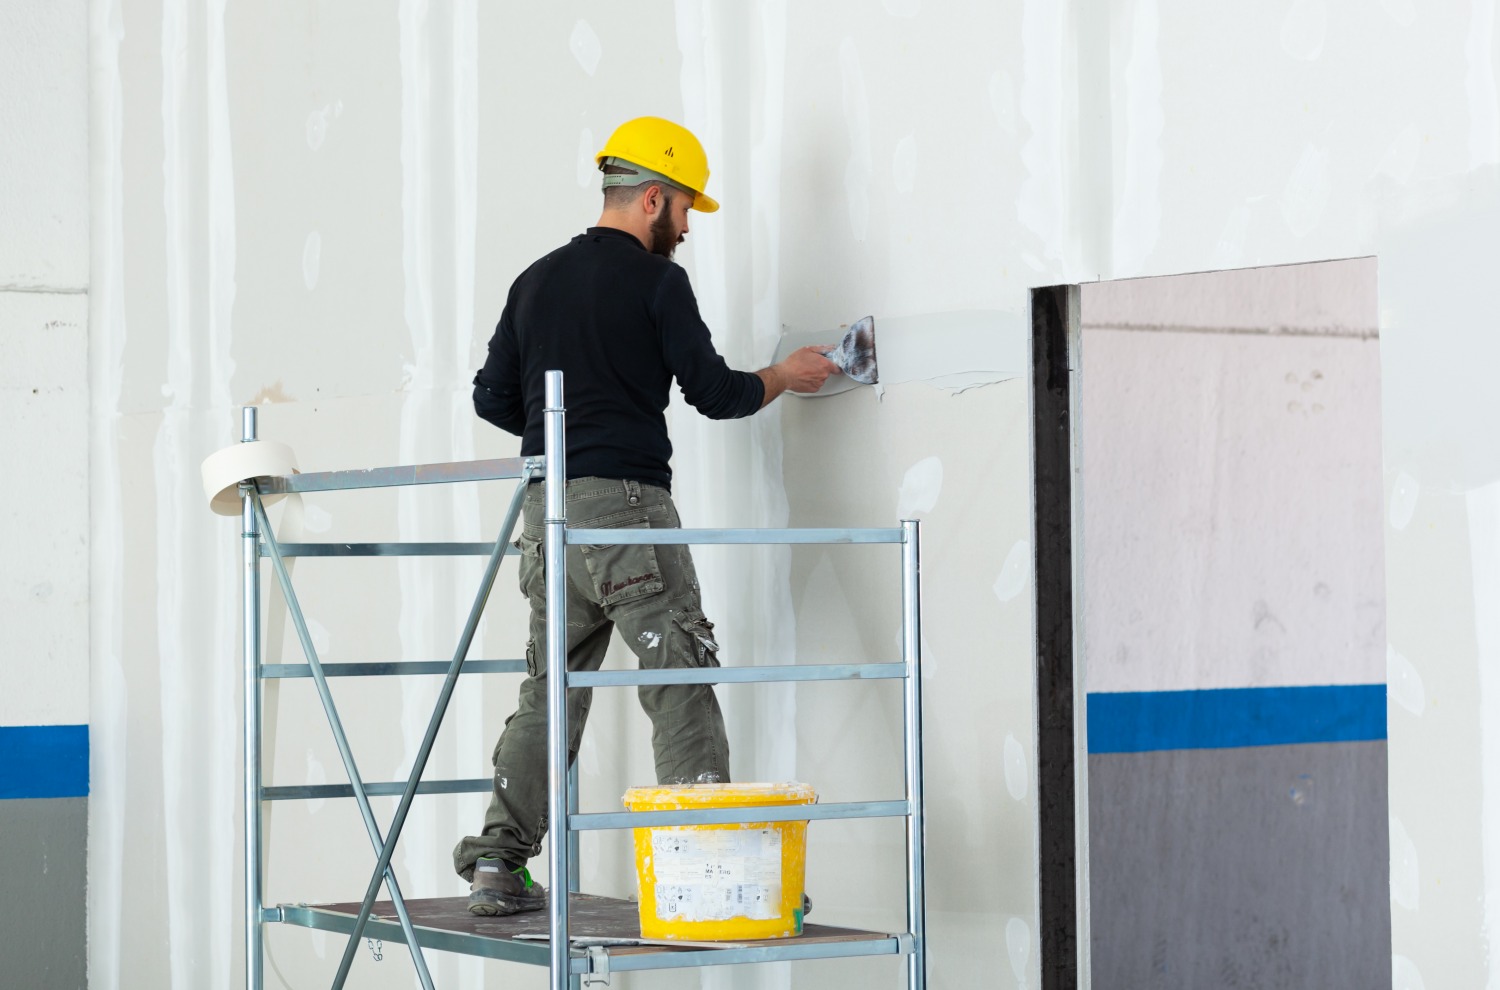 Tudo o que você precisa saber sobre chapas de drywall: vantagens, aplicações e dicas úteis da Trevo Drywall - O drywall vem crescendo no mercado. Veja tudo sobre essa tecnologia e as vantagens de investir! Confira esse e outros artigos no blog da Trevo Drywall!